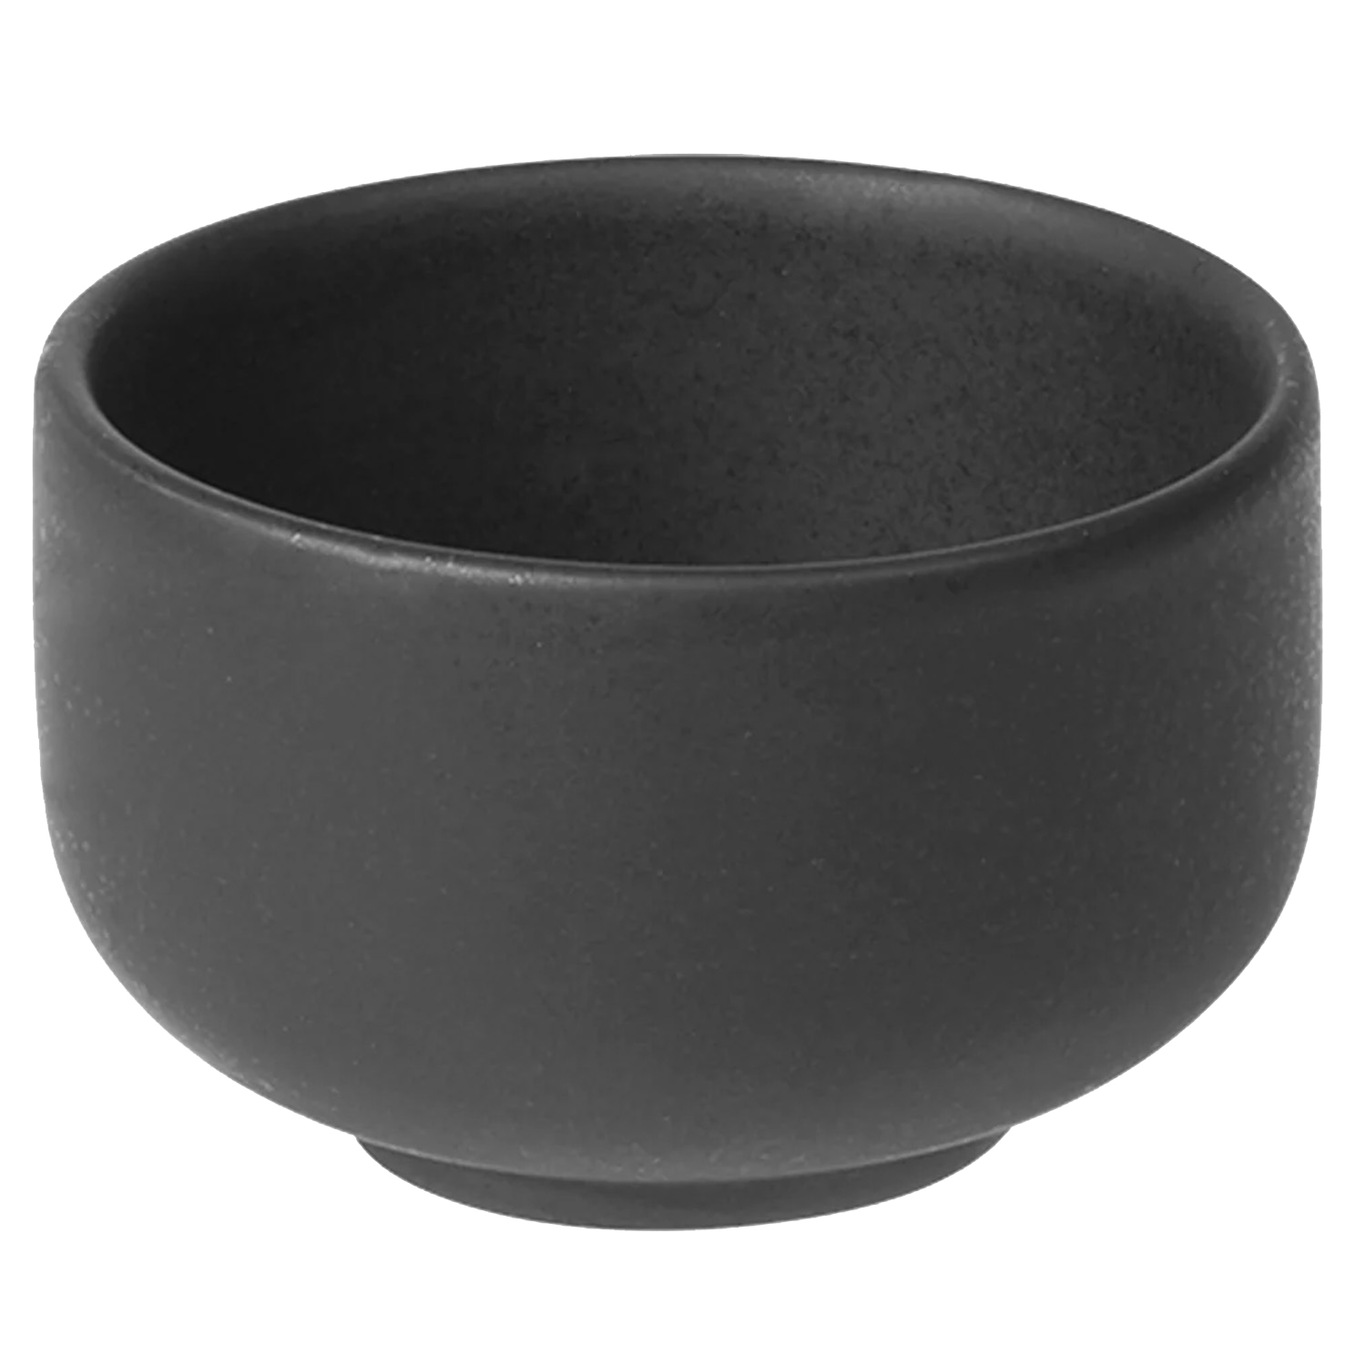 Ceramic Pisu Bowl Ø 9.3 cm, Ink Black